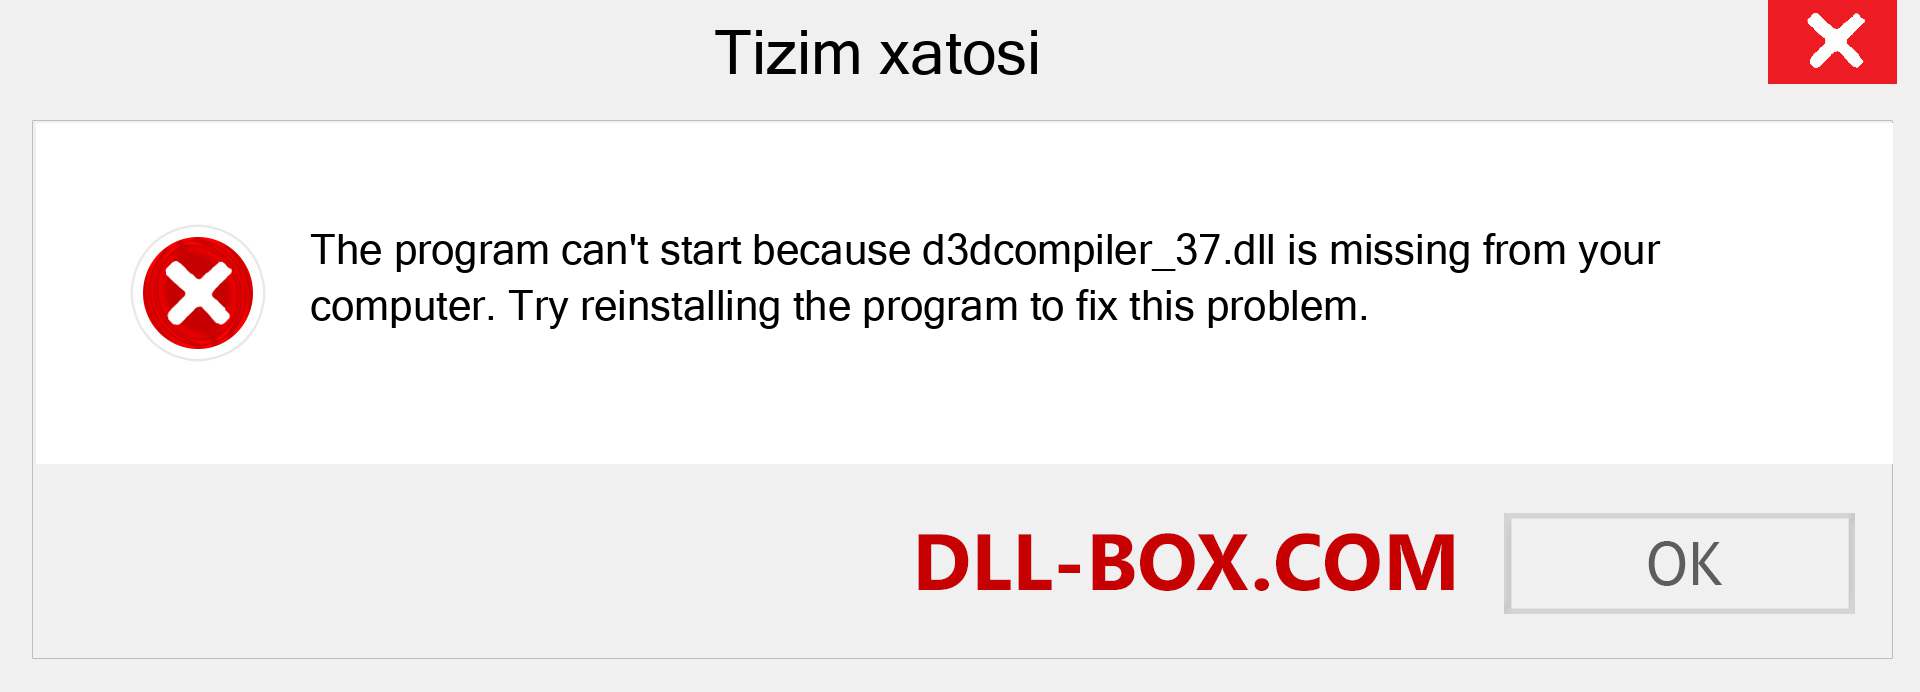 d3dcompiler_37.dll fayli yo'qolganmi?. Windows 7, 8, 10 uchun yuklab olish - Windowsda d3dcompiler_37 dll etishmayotgan xatoni tuzating, rasmlar, rasmlar